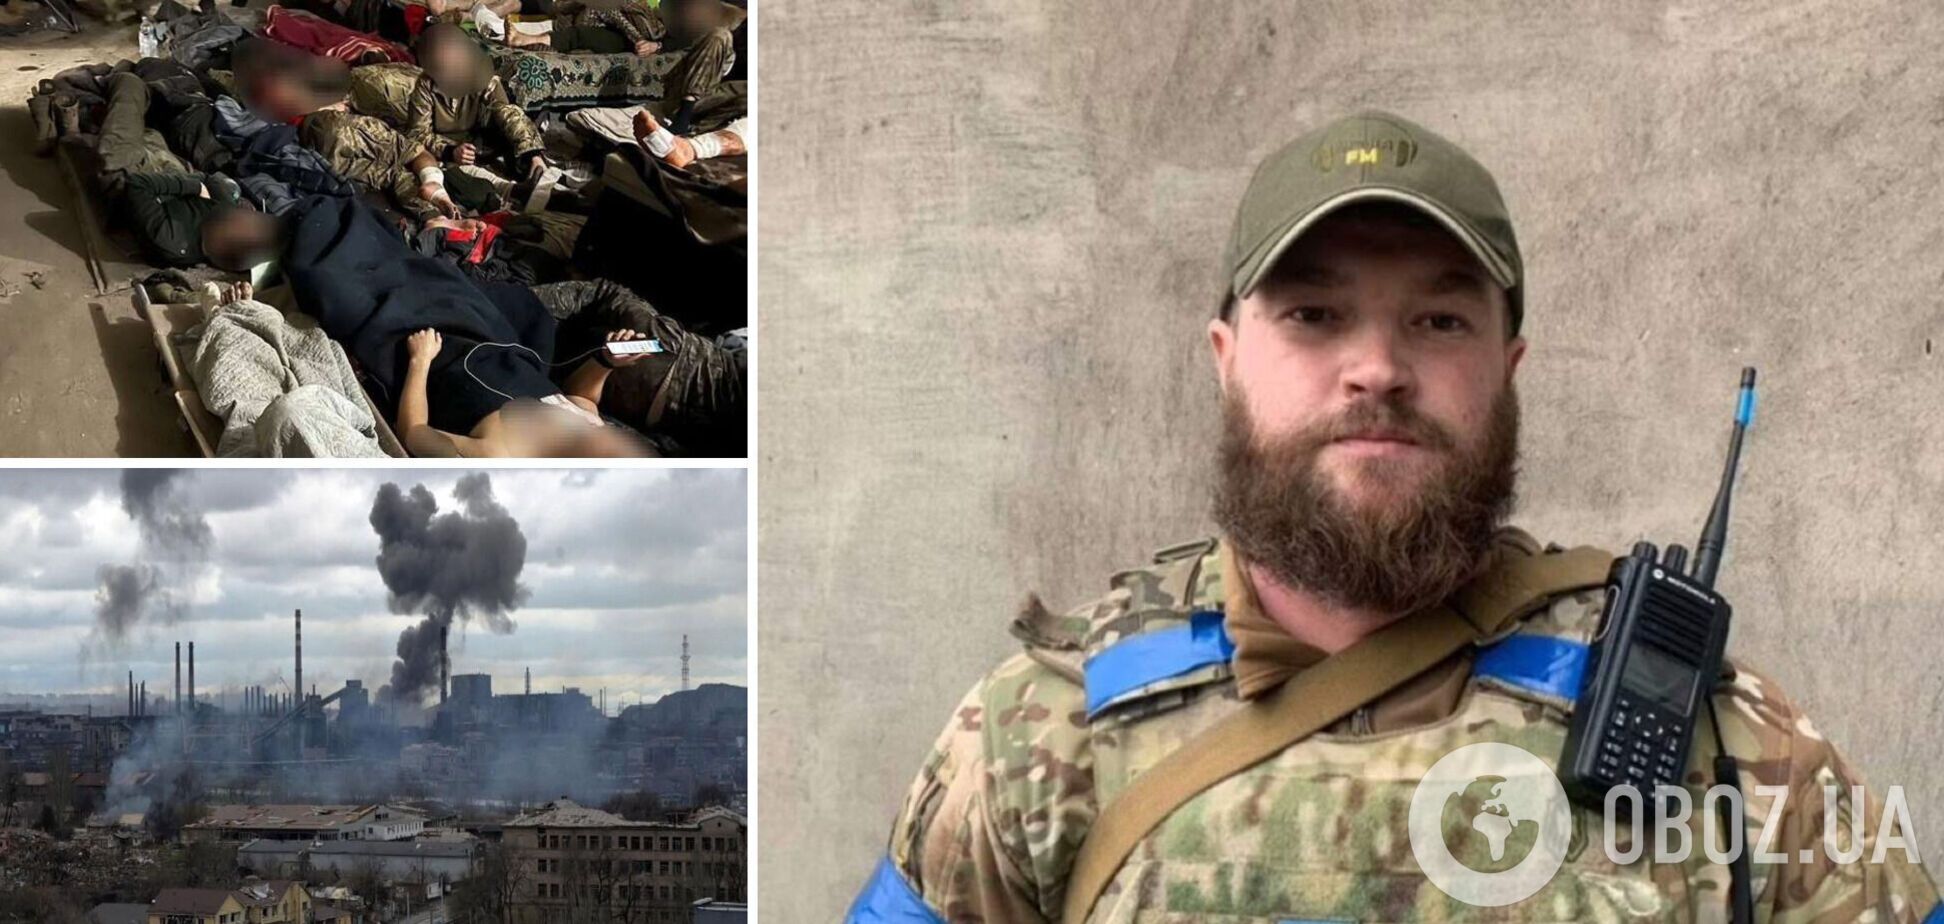 'Поранені вмирають у страшних муках': замкомандира полку 'Азов' закликав урятувати людей. Відео